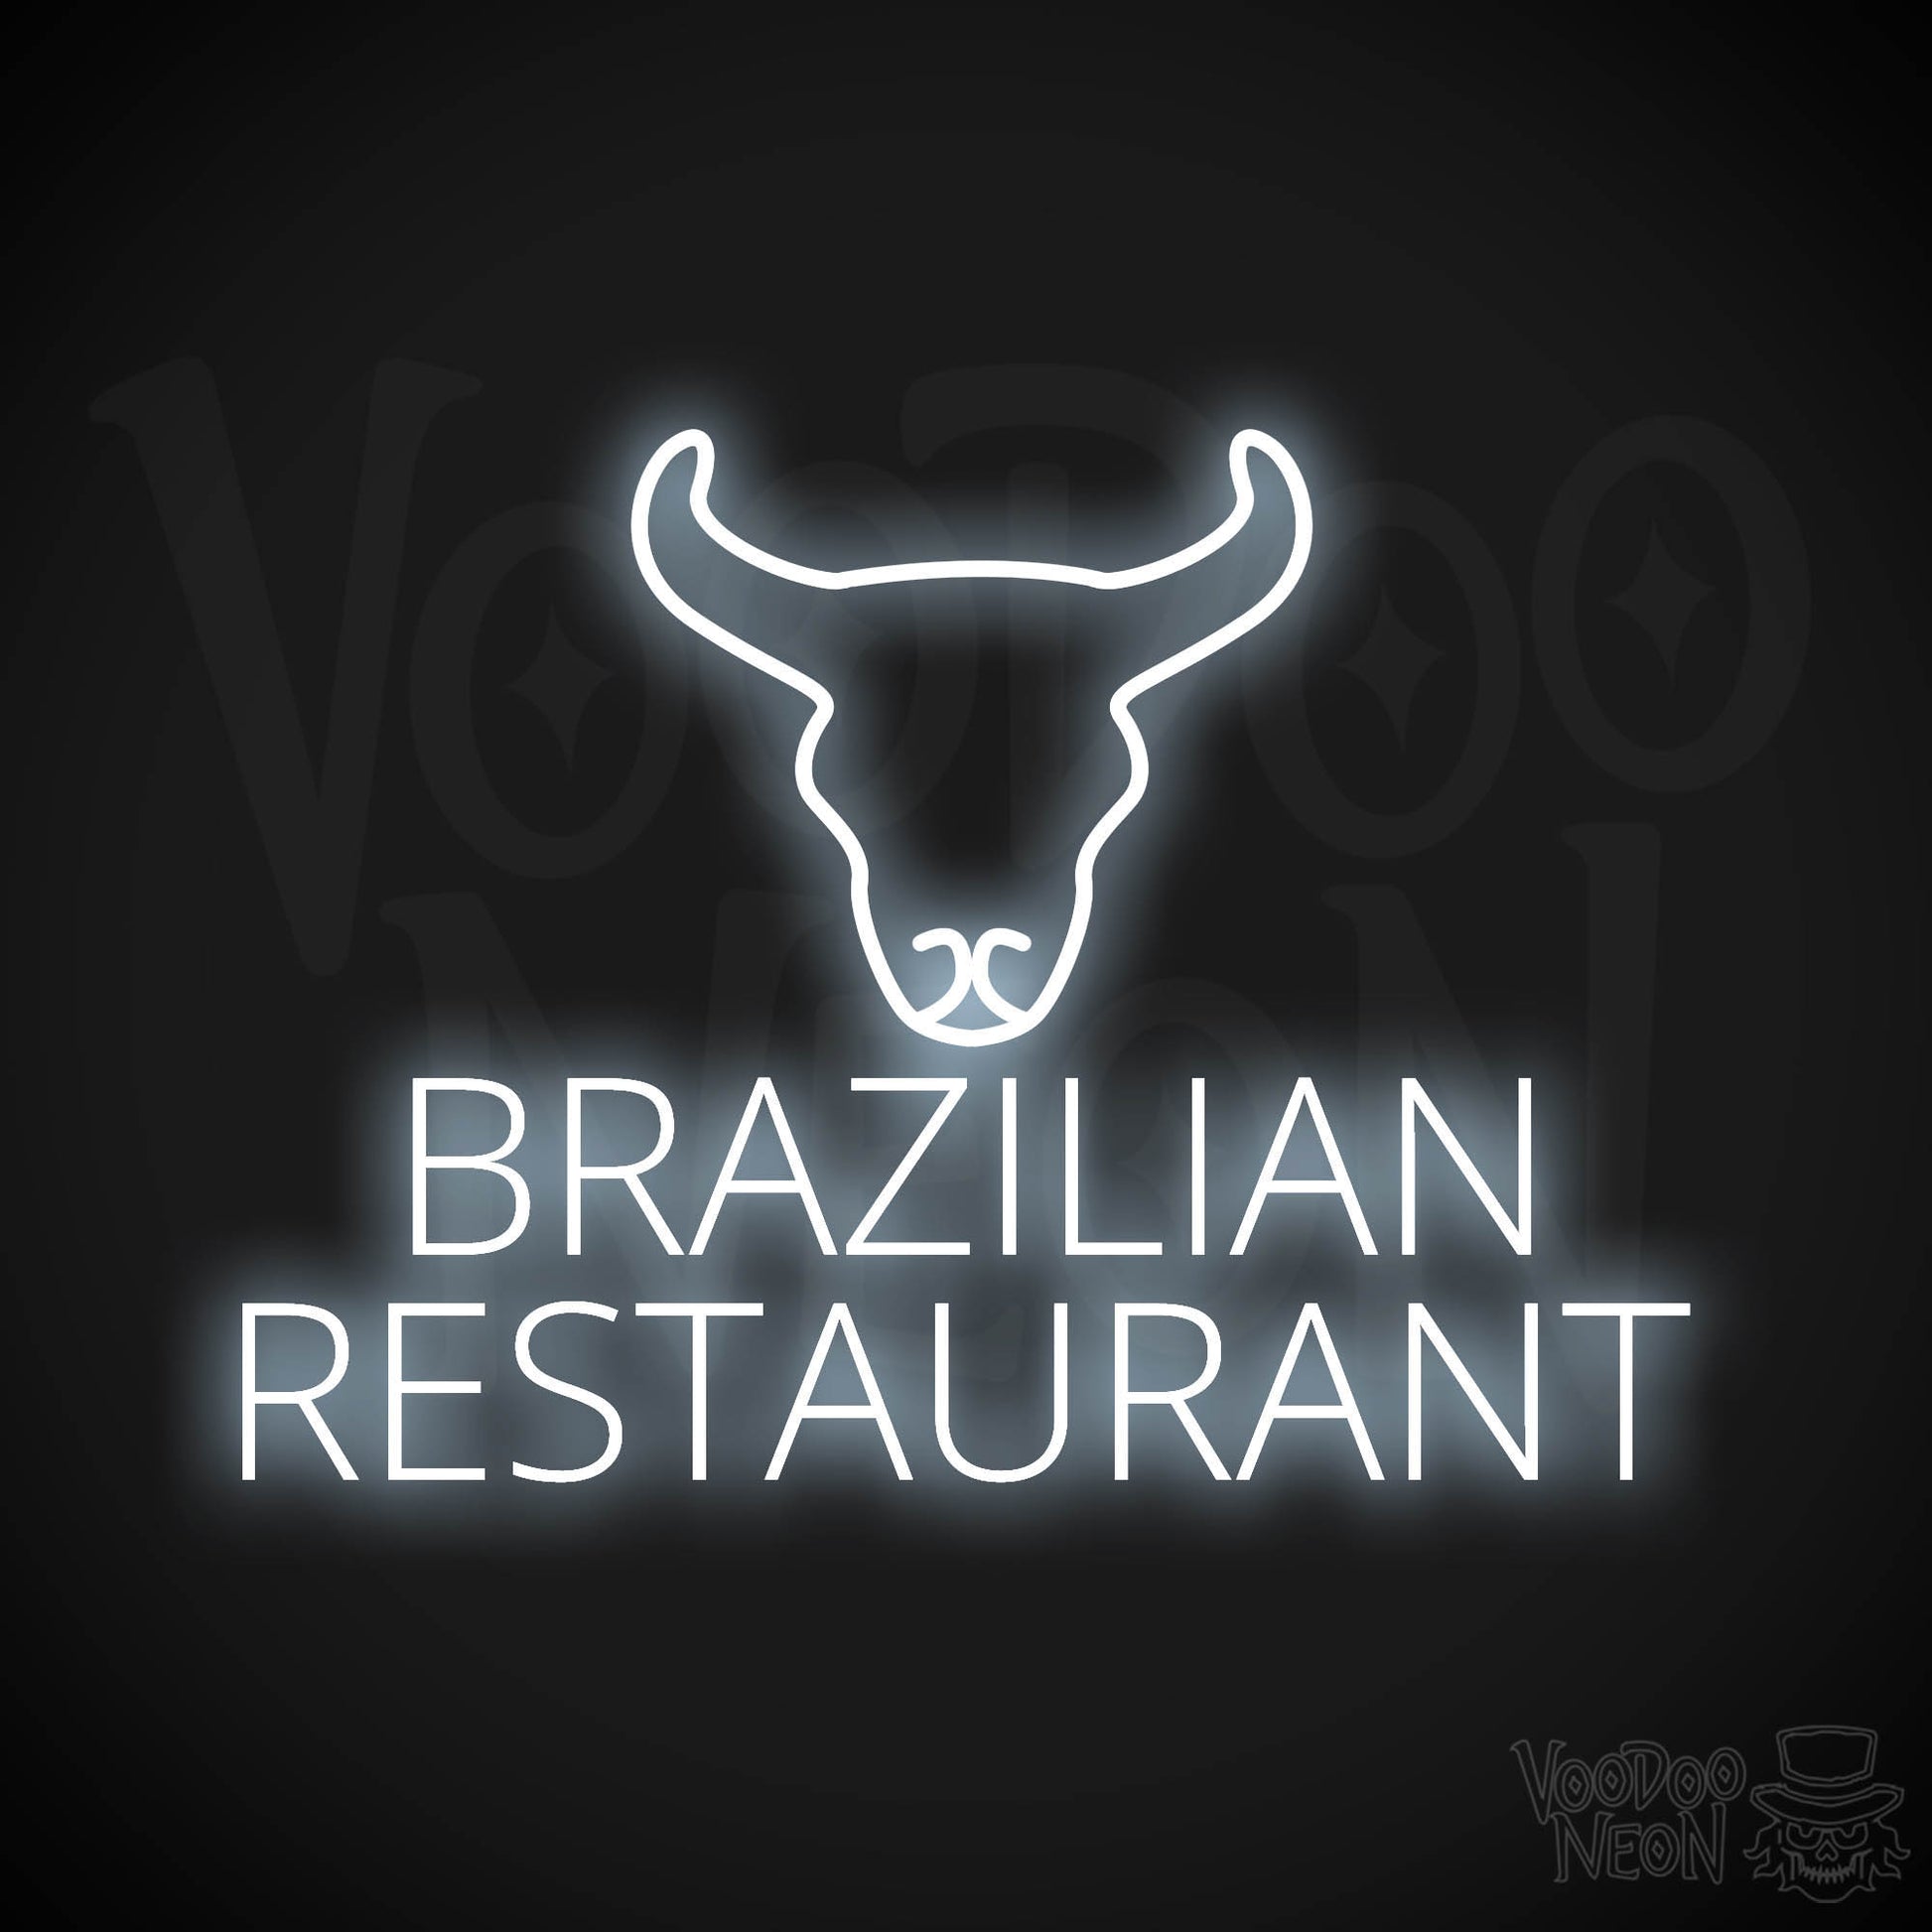 Brazilian Restaurant LED Neon - Cool White